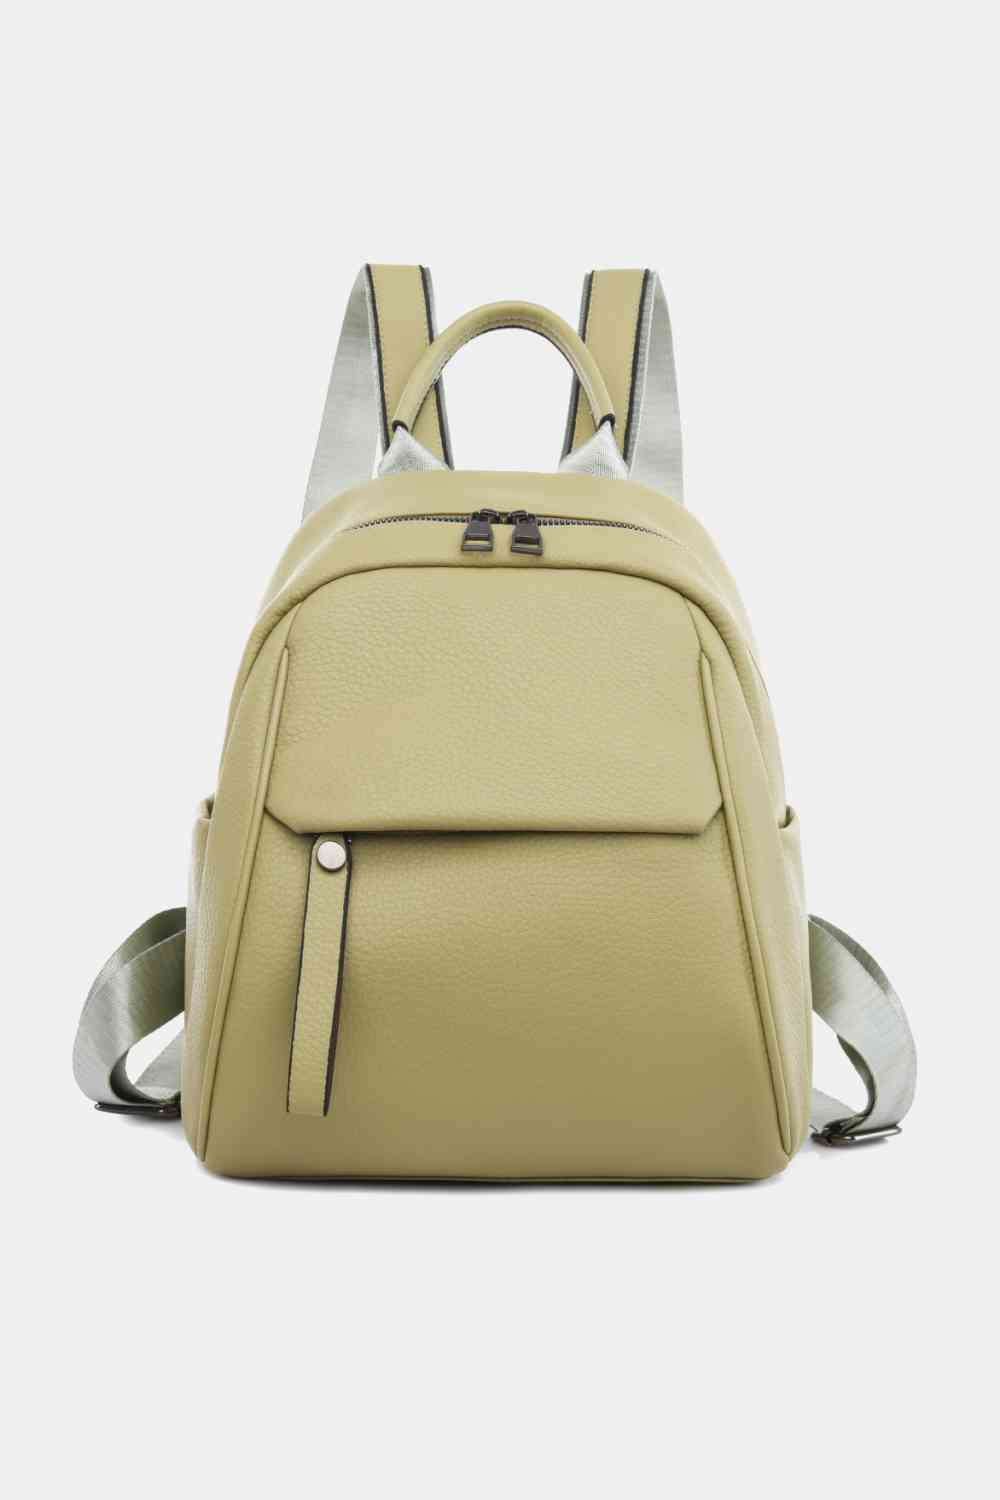 Medium PU Leather Backpack - SELFTRITSS